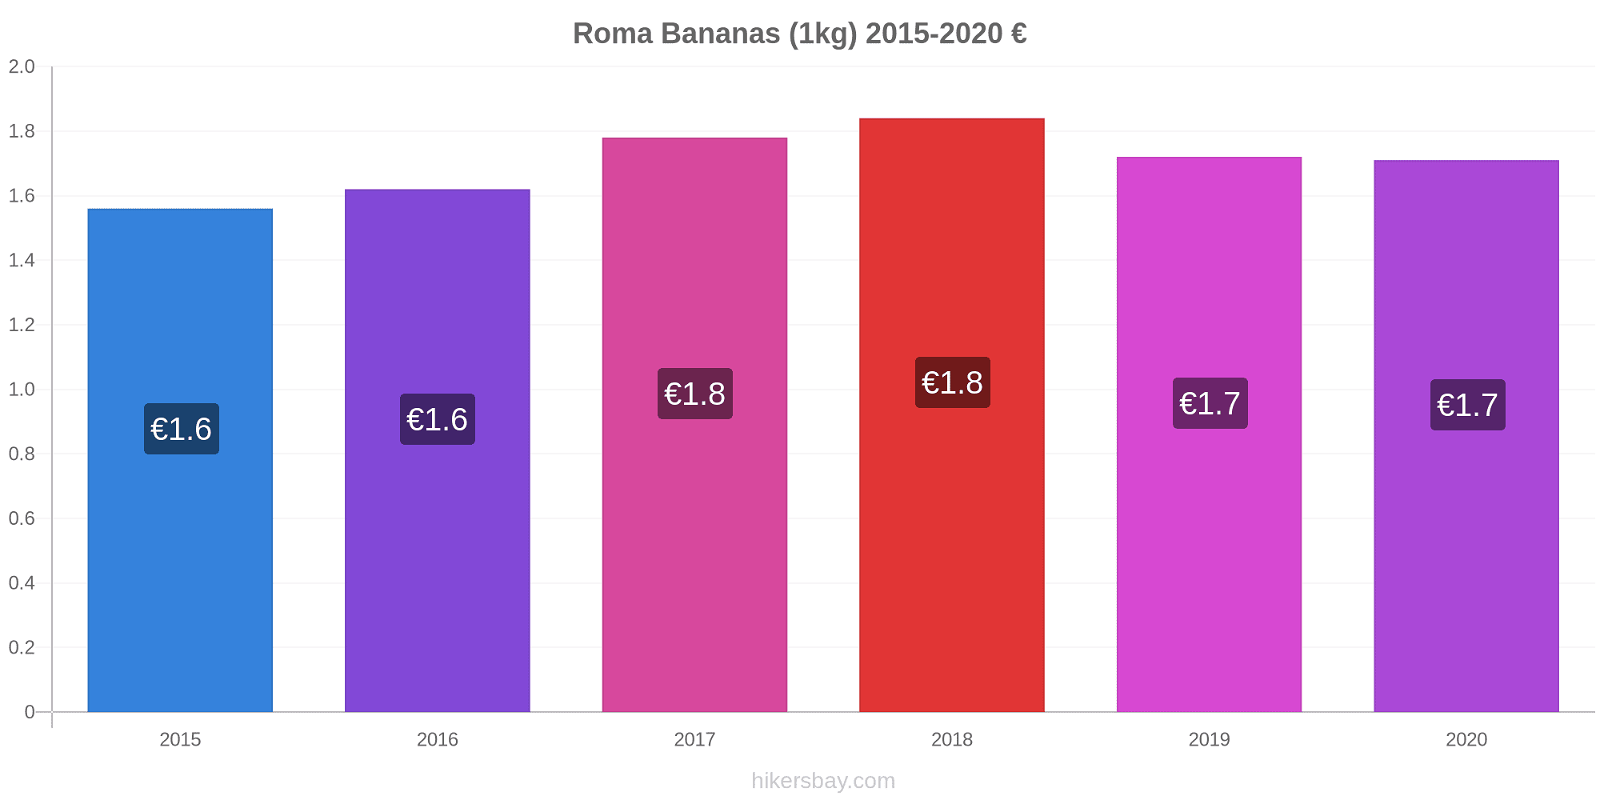 Roma variação de preço Banana (1kg) hikersbay.com